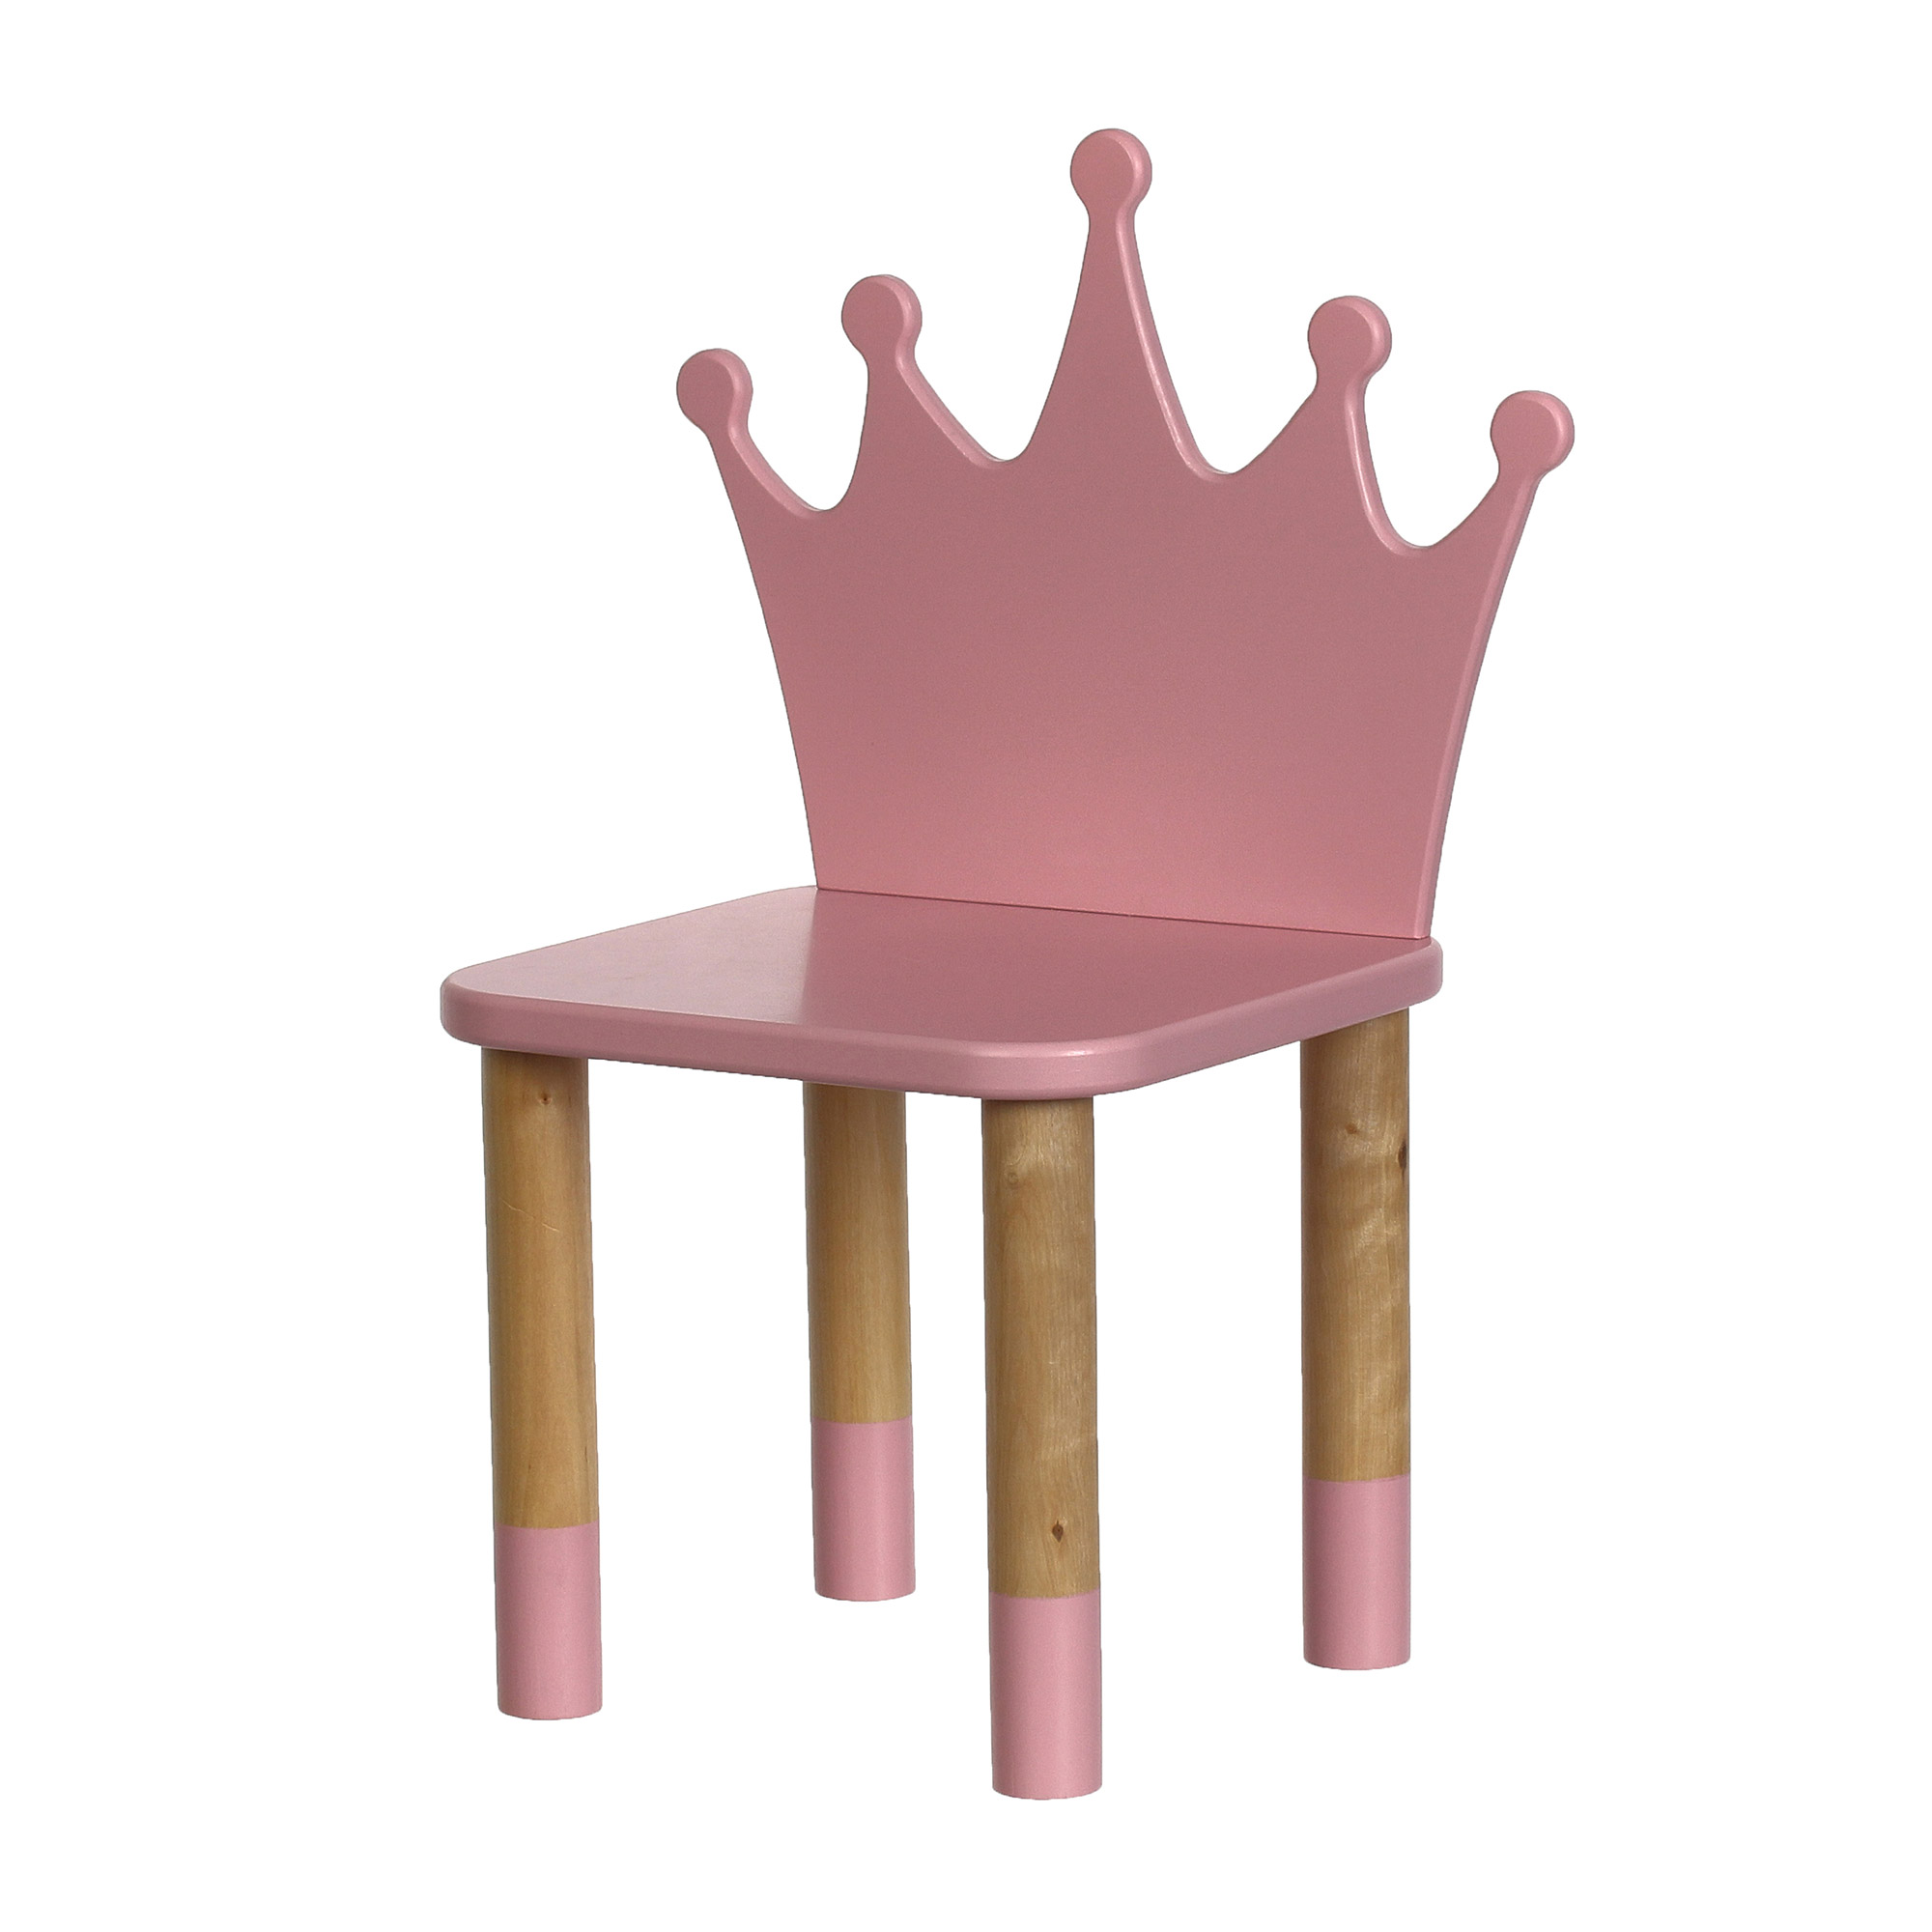 Стул Tmd корона 28х28х55 розовый стул la alta barcelona w пепельно розовый